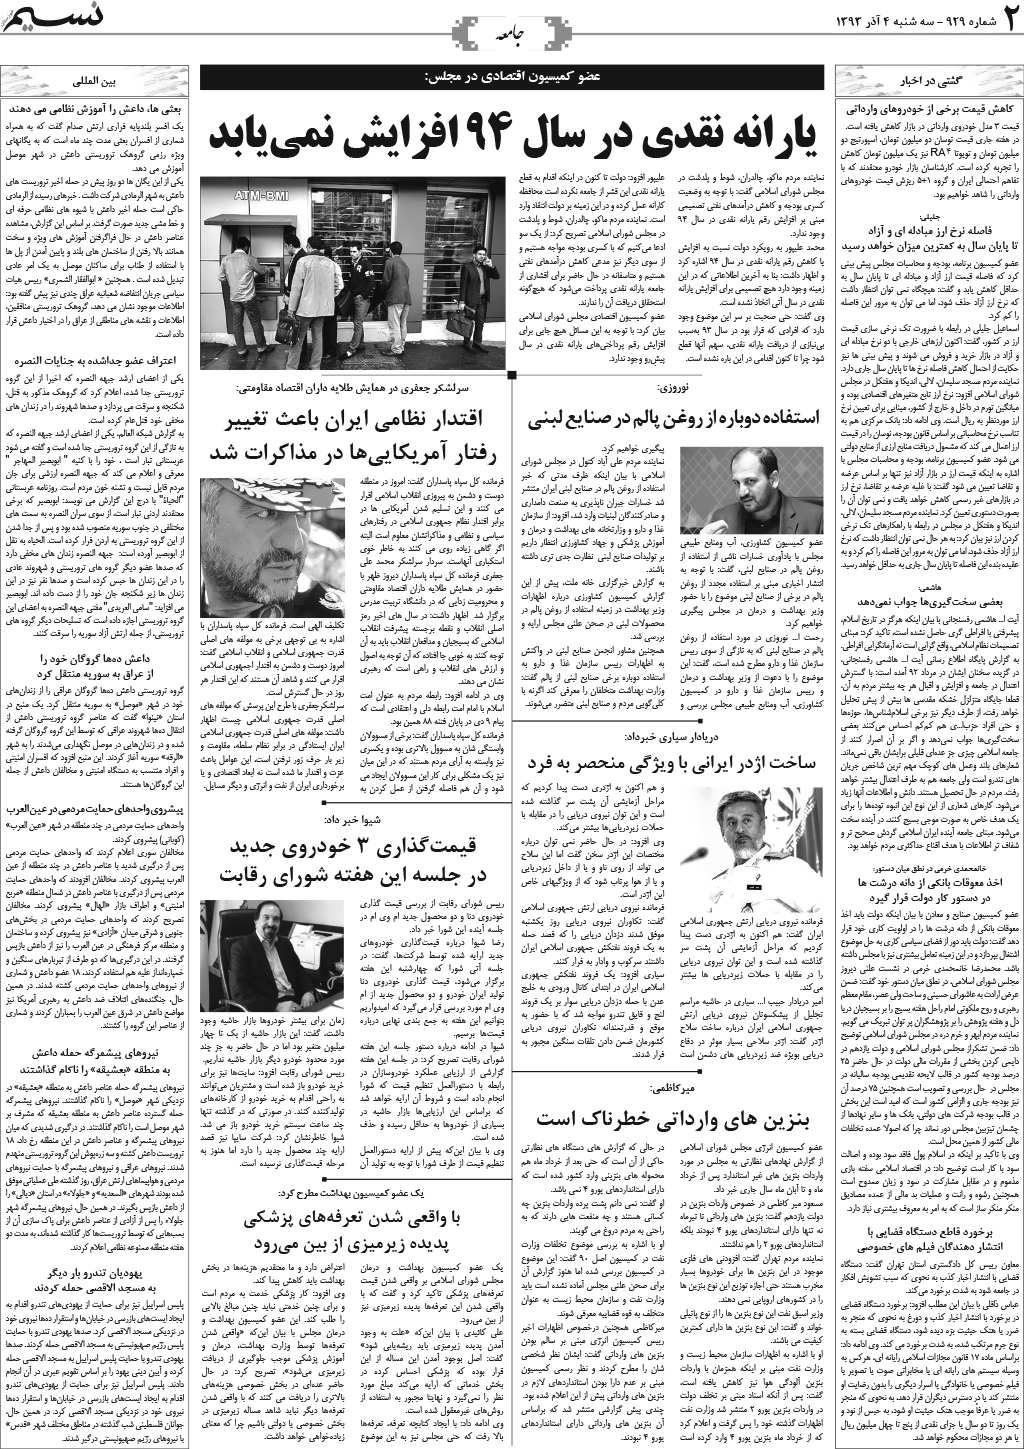 صفحه جامعه روزنامه نسیم شماره 929